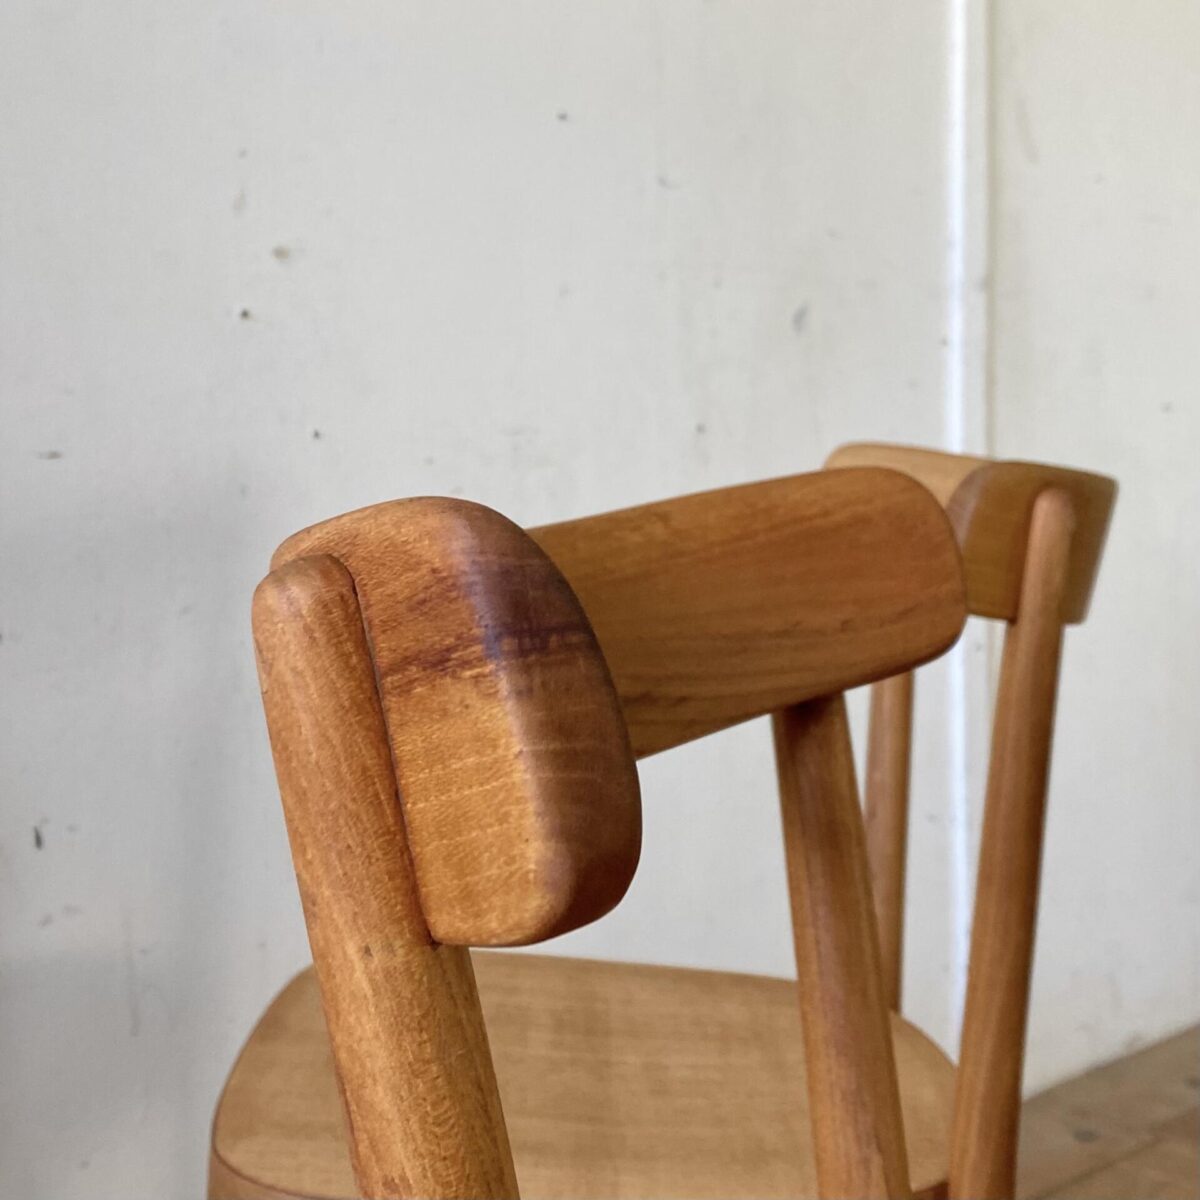 Deuxieme.shop swissdesign Max Moser. Horgenglarus Stühle von Max Moser in Ulmenholz Ausführung. Die Stühle sind restauriert, die alten defekten Sitzflächen mussten durch neue ersetzt werden. Die Holzoberflächen sind mit Naturöl behandelt. Die Stühle haben eine warme Ausstrahlung mit leichter Alterspatina. Bei zwei Stühlen wurde ein Hinterbein durchgehend verschraubt. Der Moser Stuhl 1-250 wird immer noch in Buchenholz produziert. Der Preis bezieht sich pro Stuhl, die zwei mit Holzzapfen im Hinterbein 500.- pro Stuhl. 